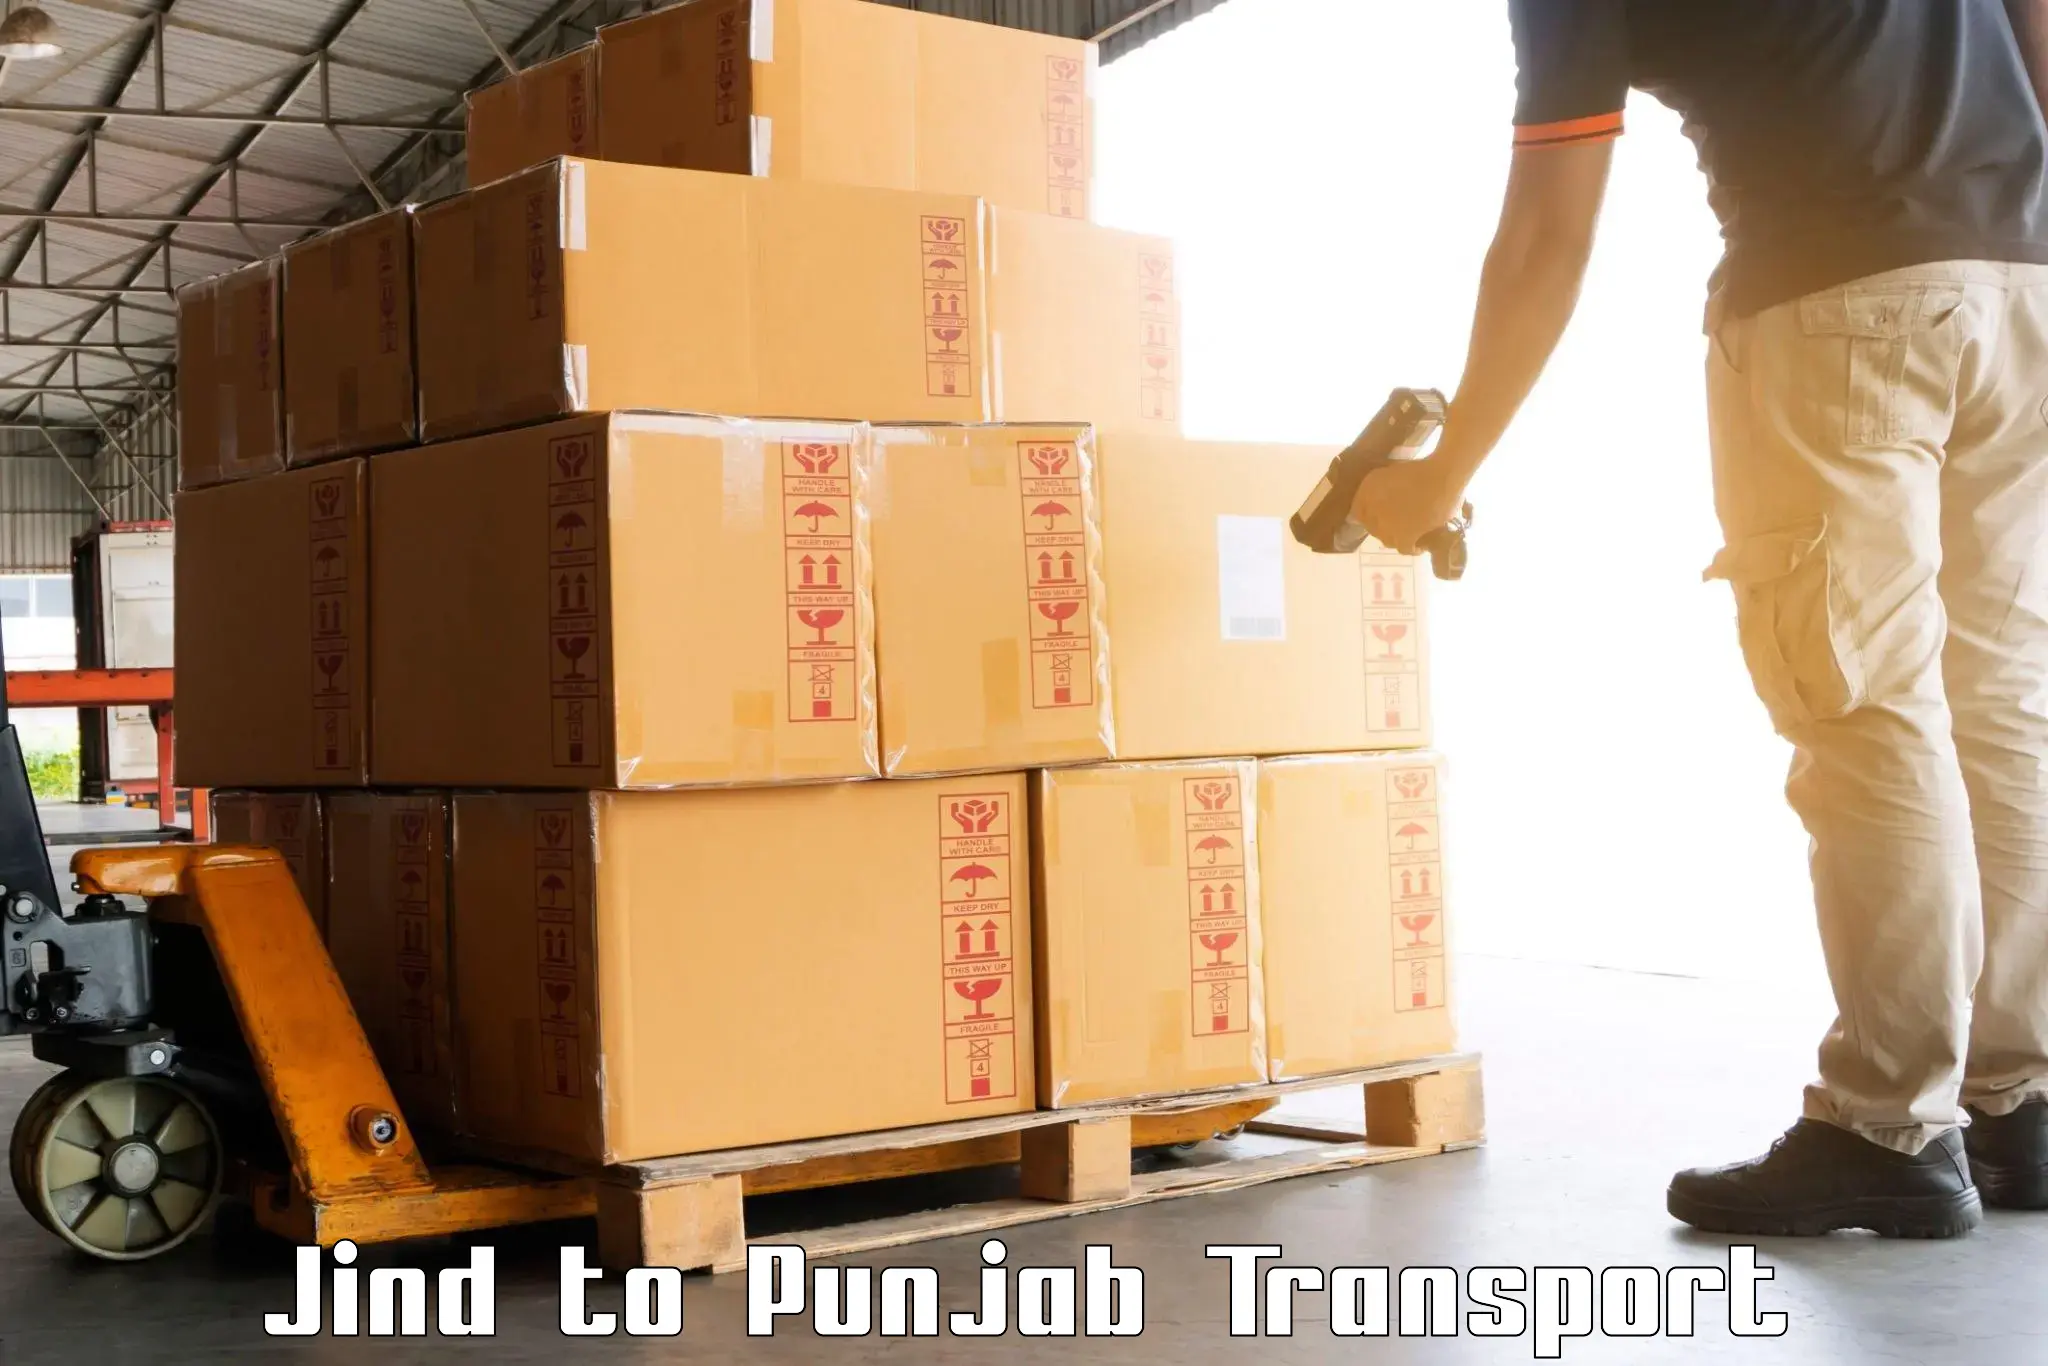 Logistics transportation services Jind to Patti Tarn Tara